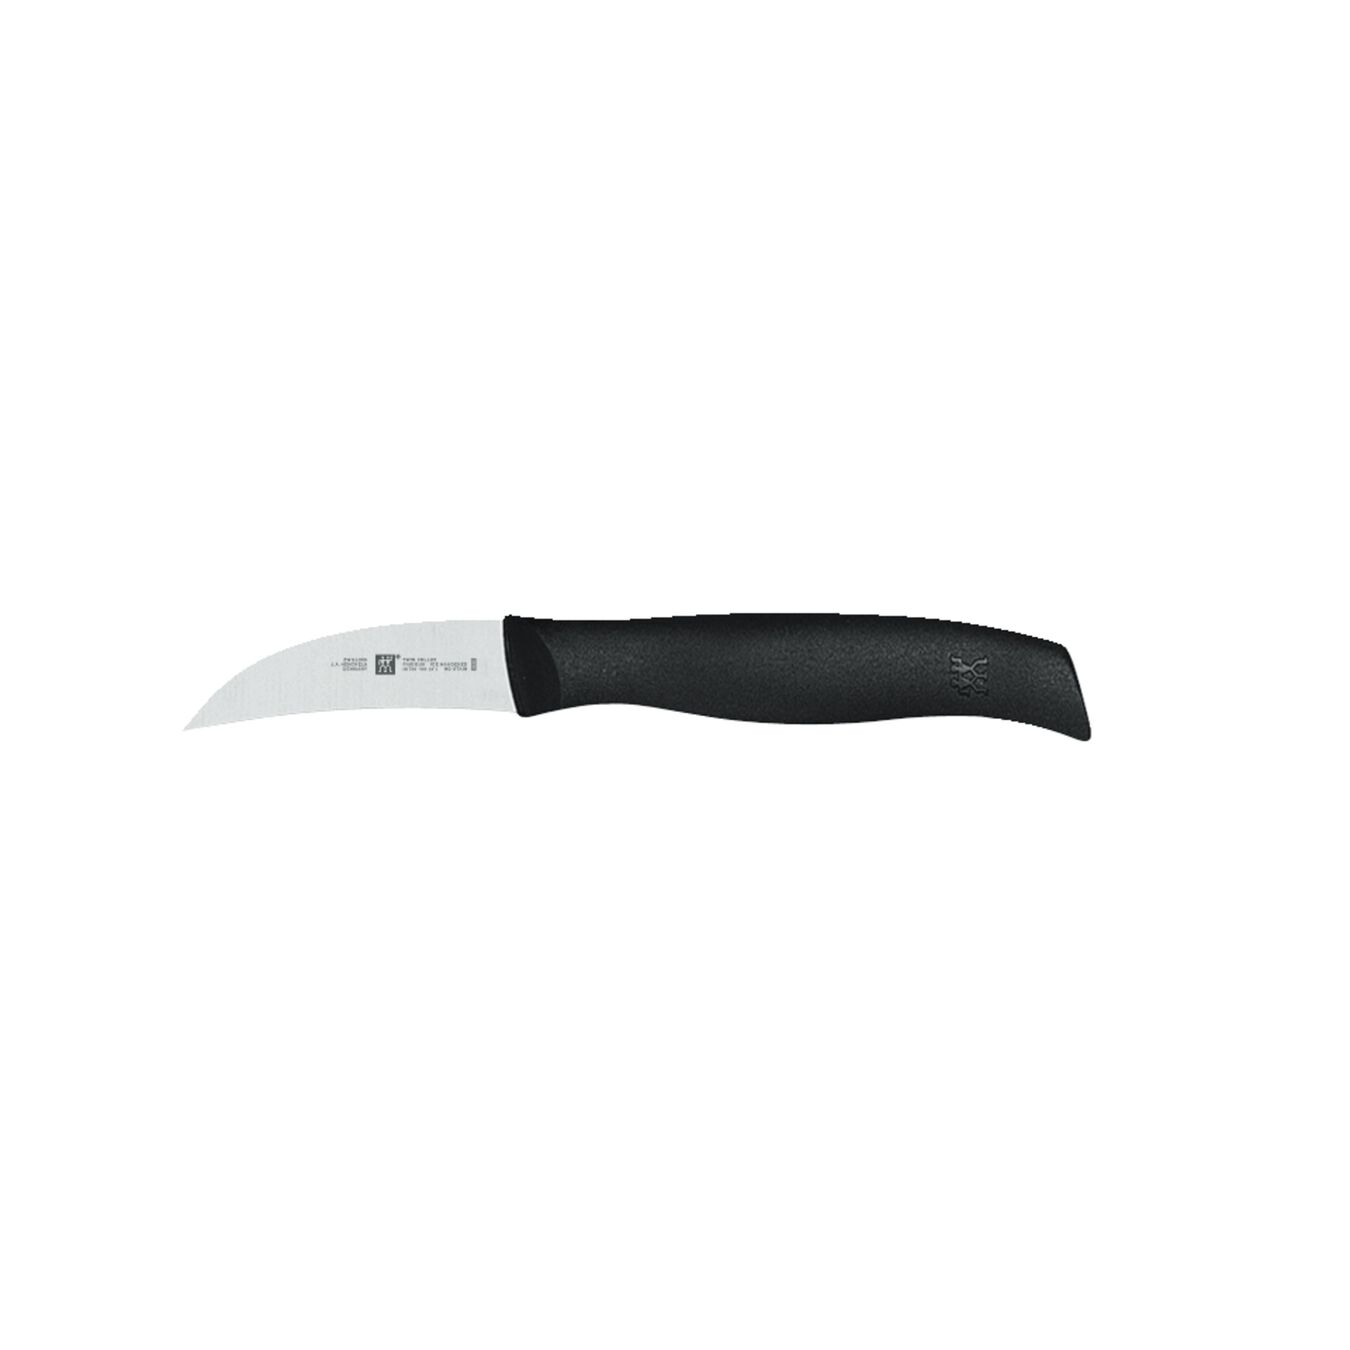 2.5 inch Peeling knife,,large 1